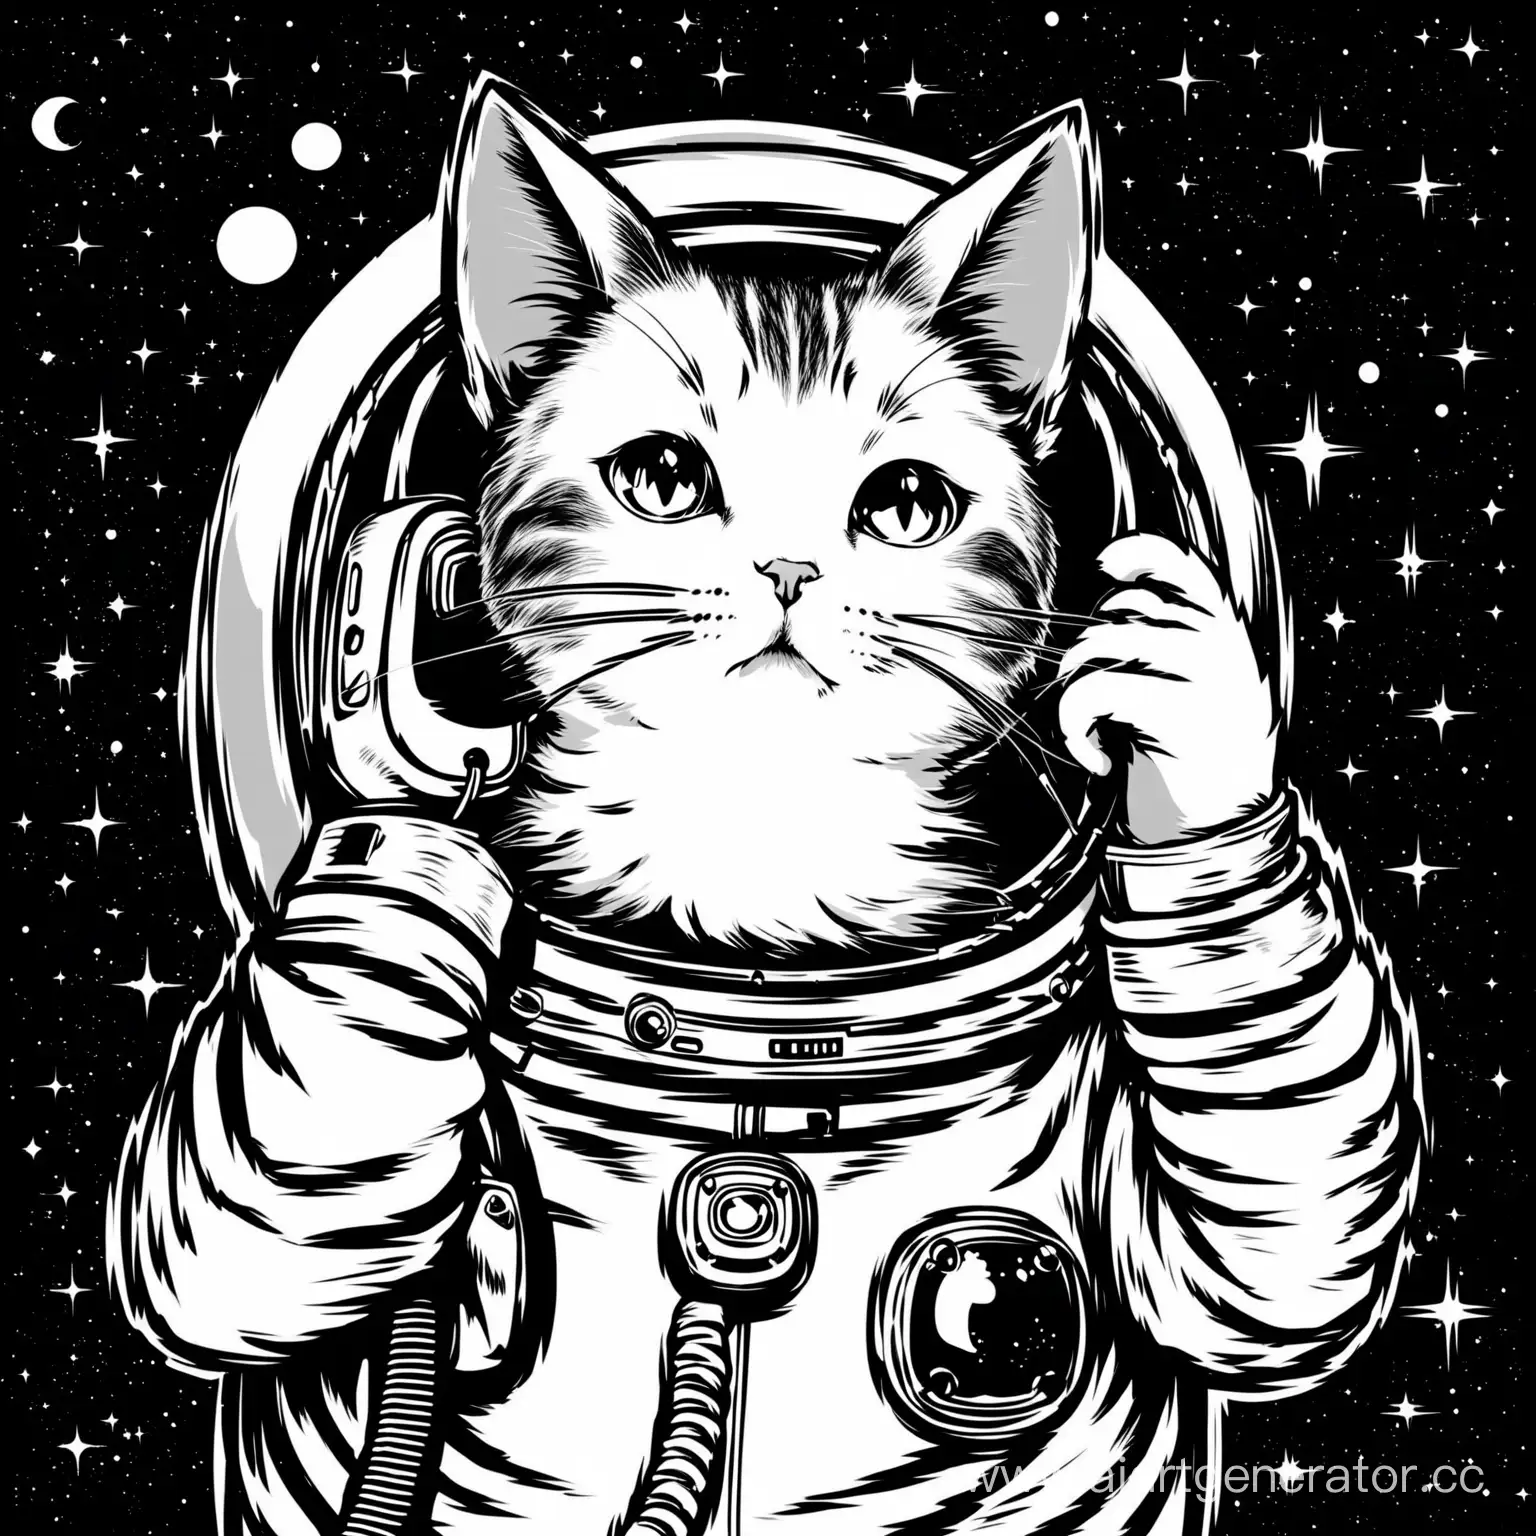 Чёрно-белые изображение кота в костюме космонавта, говорящего по телефону. Кот изобрежен в половину своего роста 